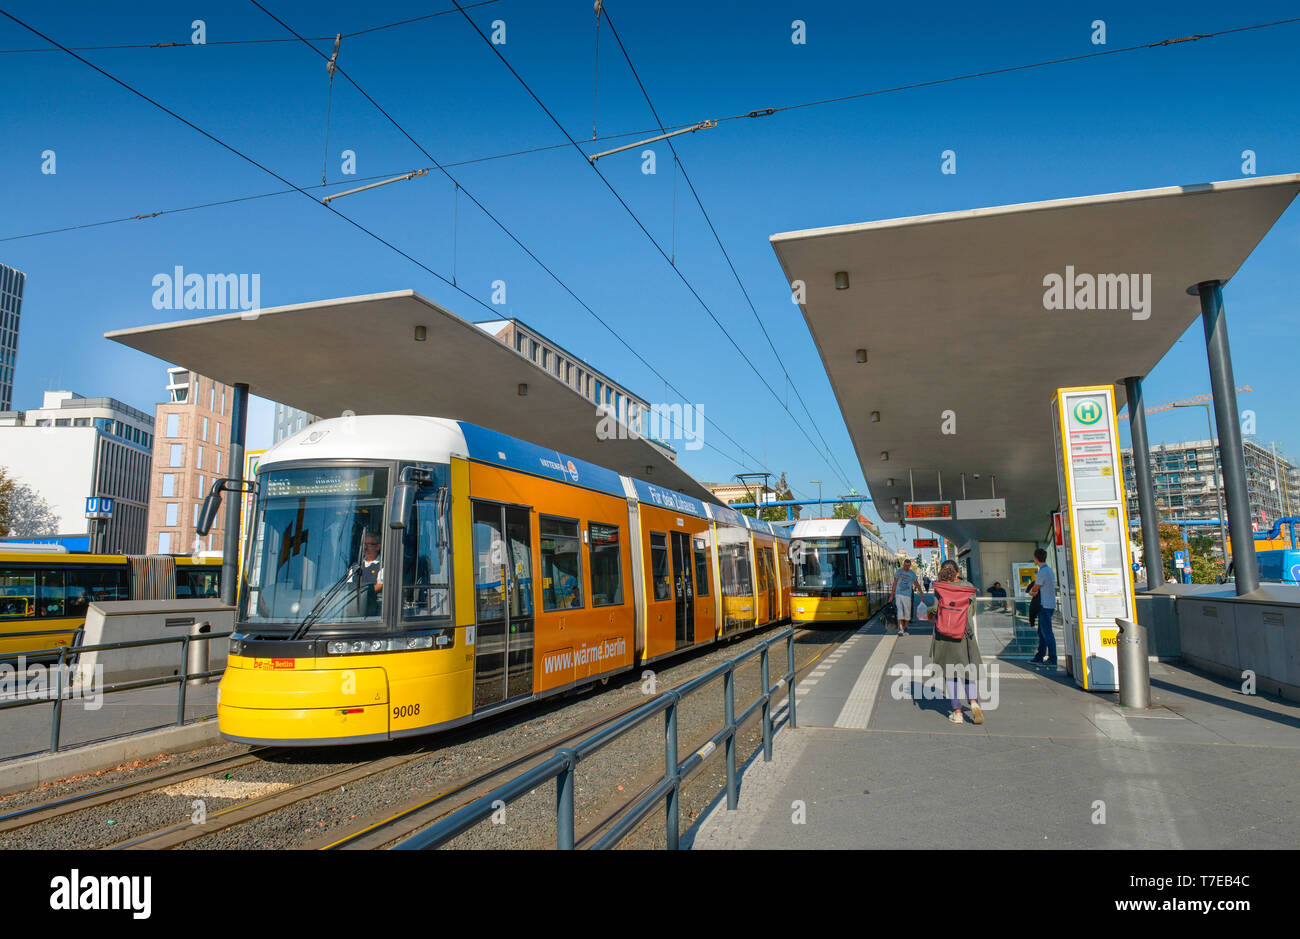 Tram-Haltestelle, Invalidenstrasse, Hauptbahnhof, Moabit, Mitte, Berlin, Deutschland Banque D'Images